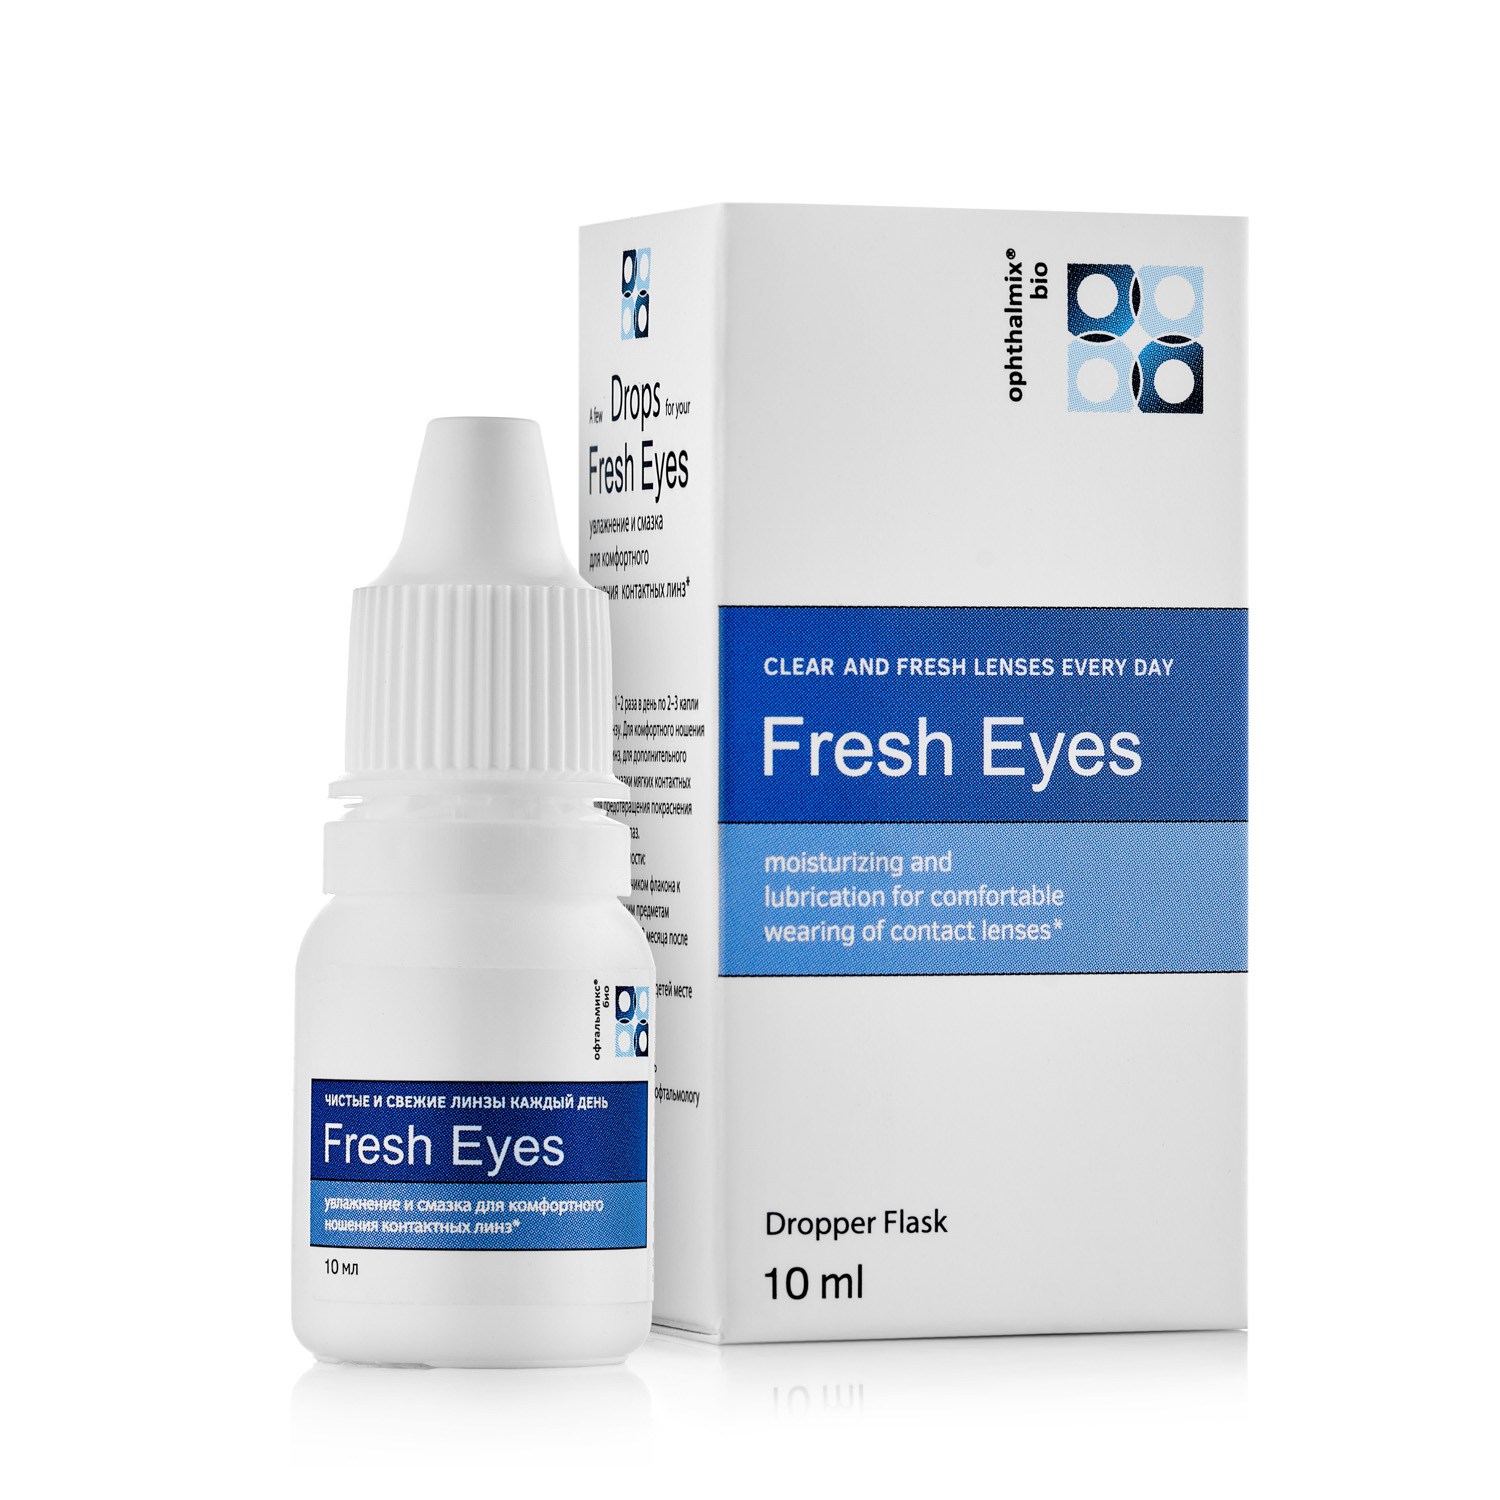 Лучшие увлажняющие глазные капли. Капли Офтальмикс био Fresh Eye. Увлажняющие капли для глаз 10 мл. Капли для контактных линз увлажняющие Fresh. Глазные капли для увлажнения глаз с гиалуроновой кислотой.